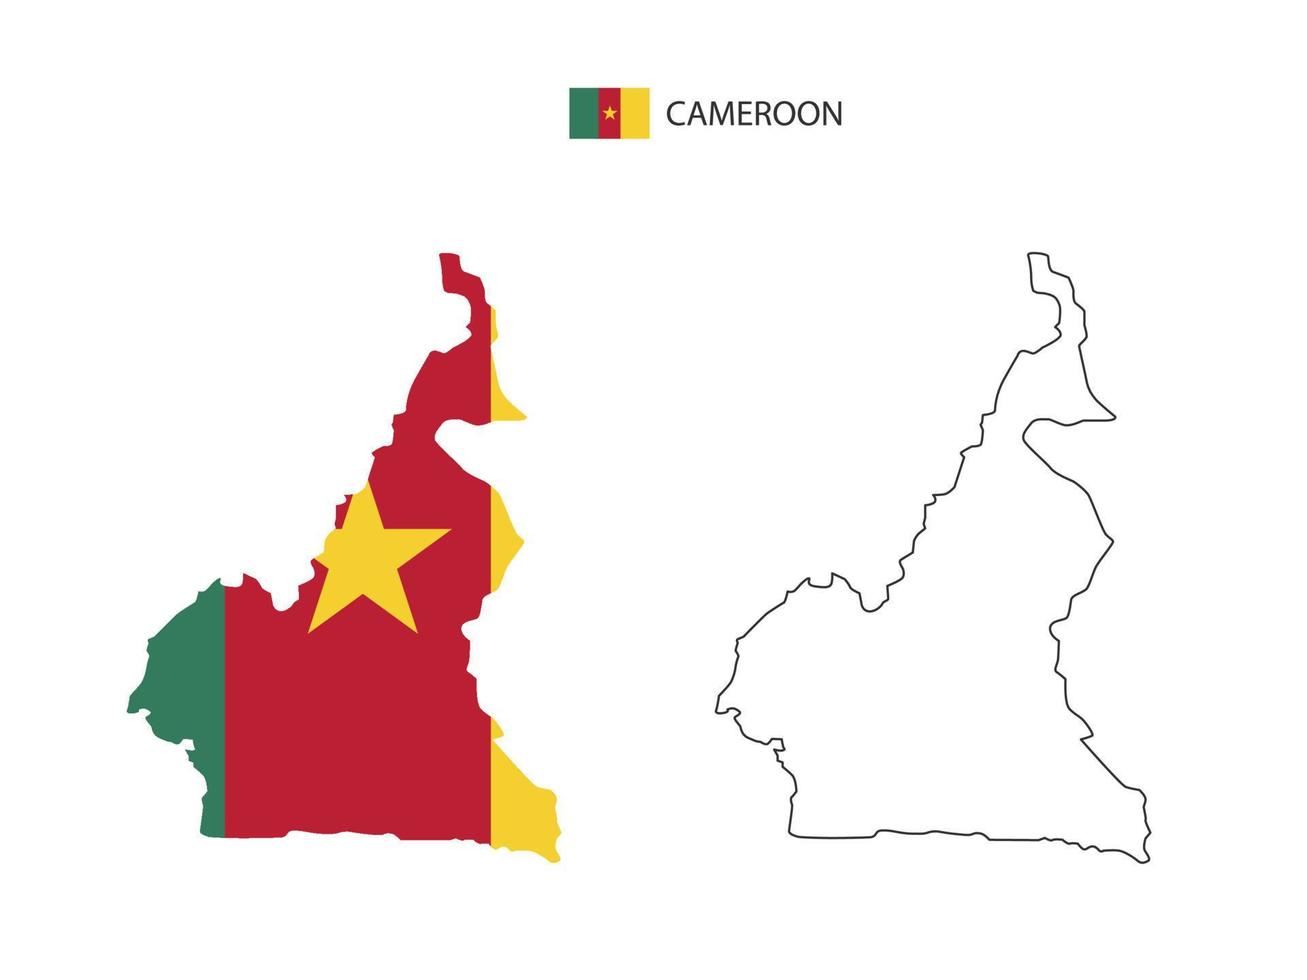 vector de ciudad de mapa de camerún dividido por estilo de simplicidad de contorno. tiene 2 versiones, versión de línea delgada negra y versión de color de bandera de país. ambos mapas estaban en el fondo blanco.